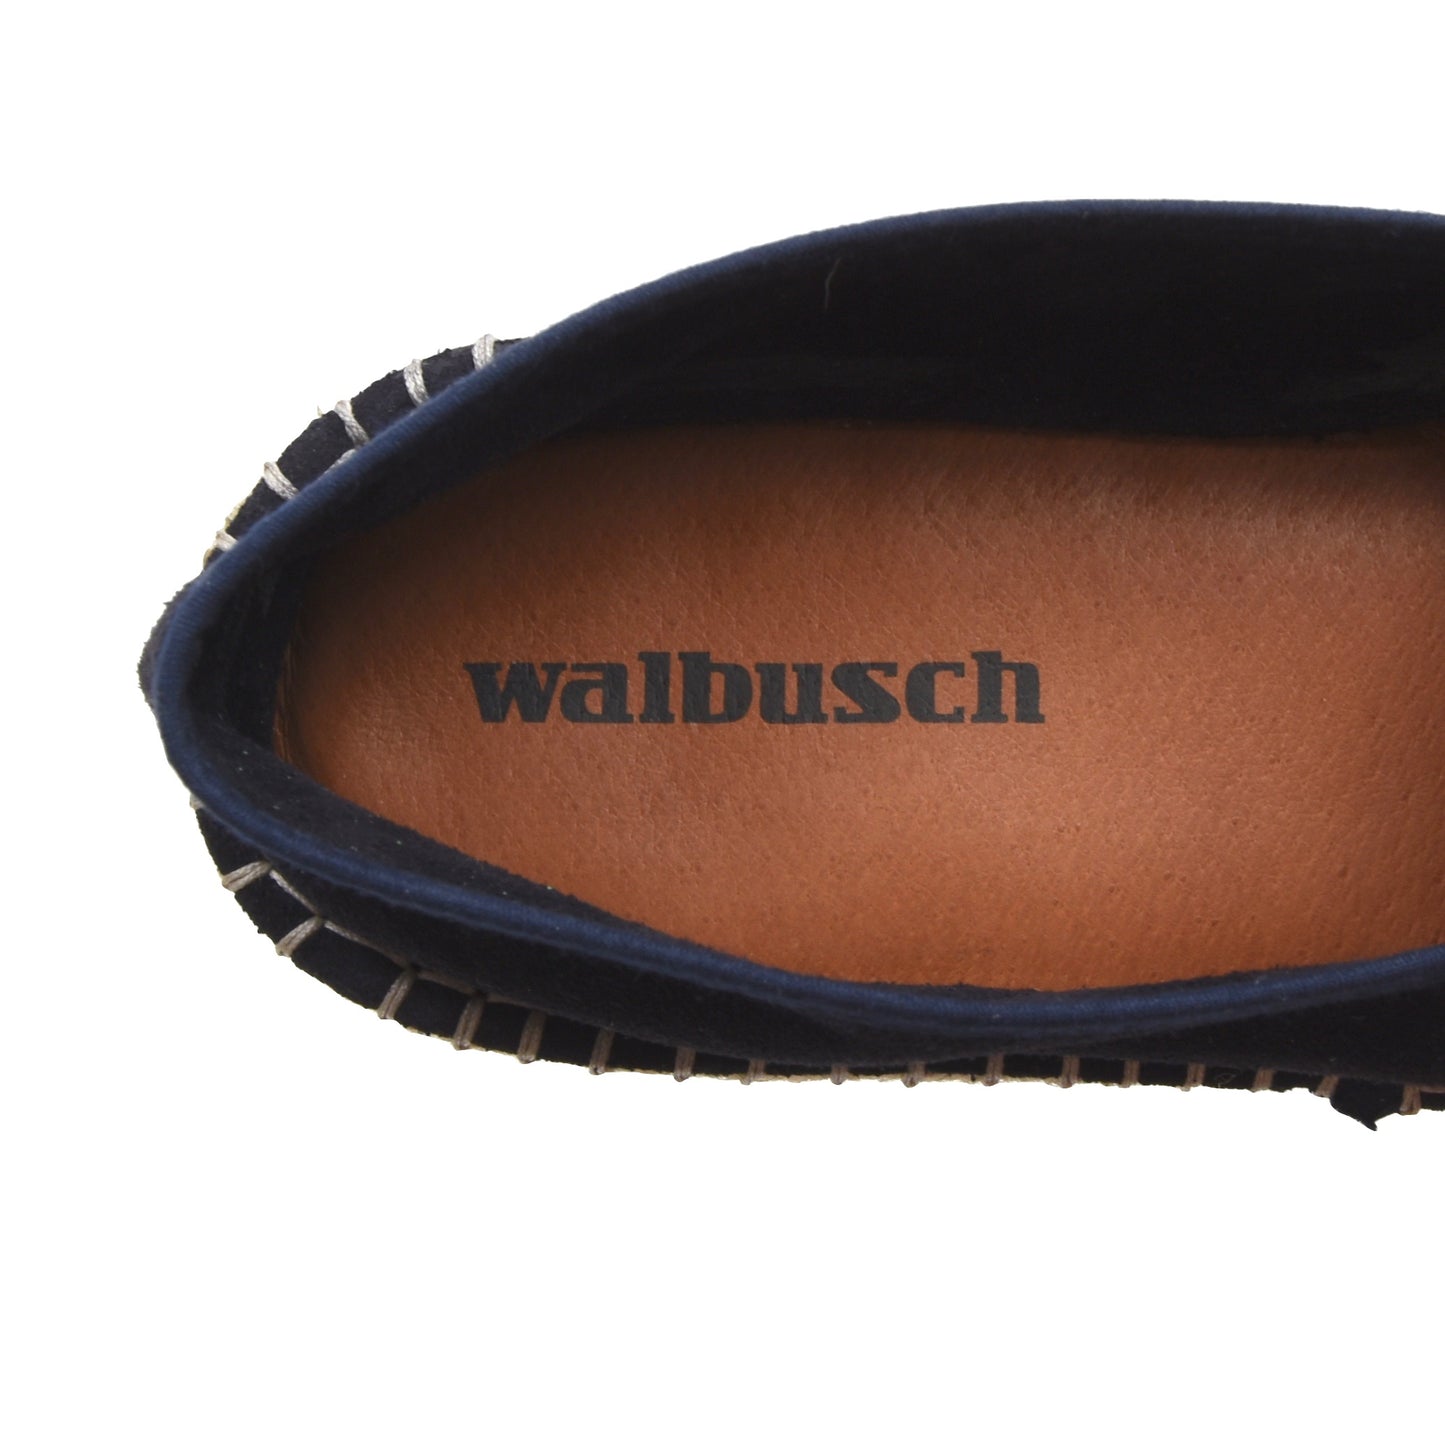 Walbusch Wildleder Espadrilles/Loafer Größe 44 - Marineblau